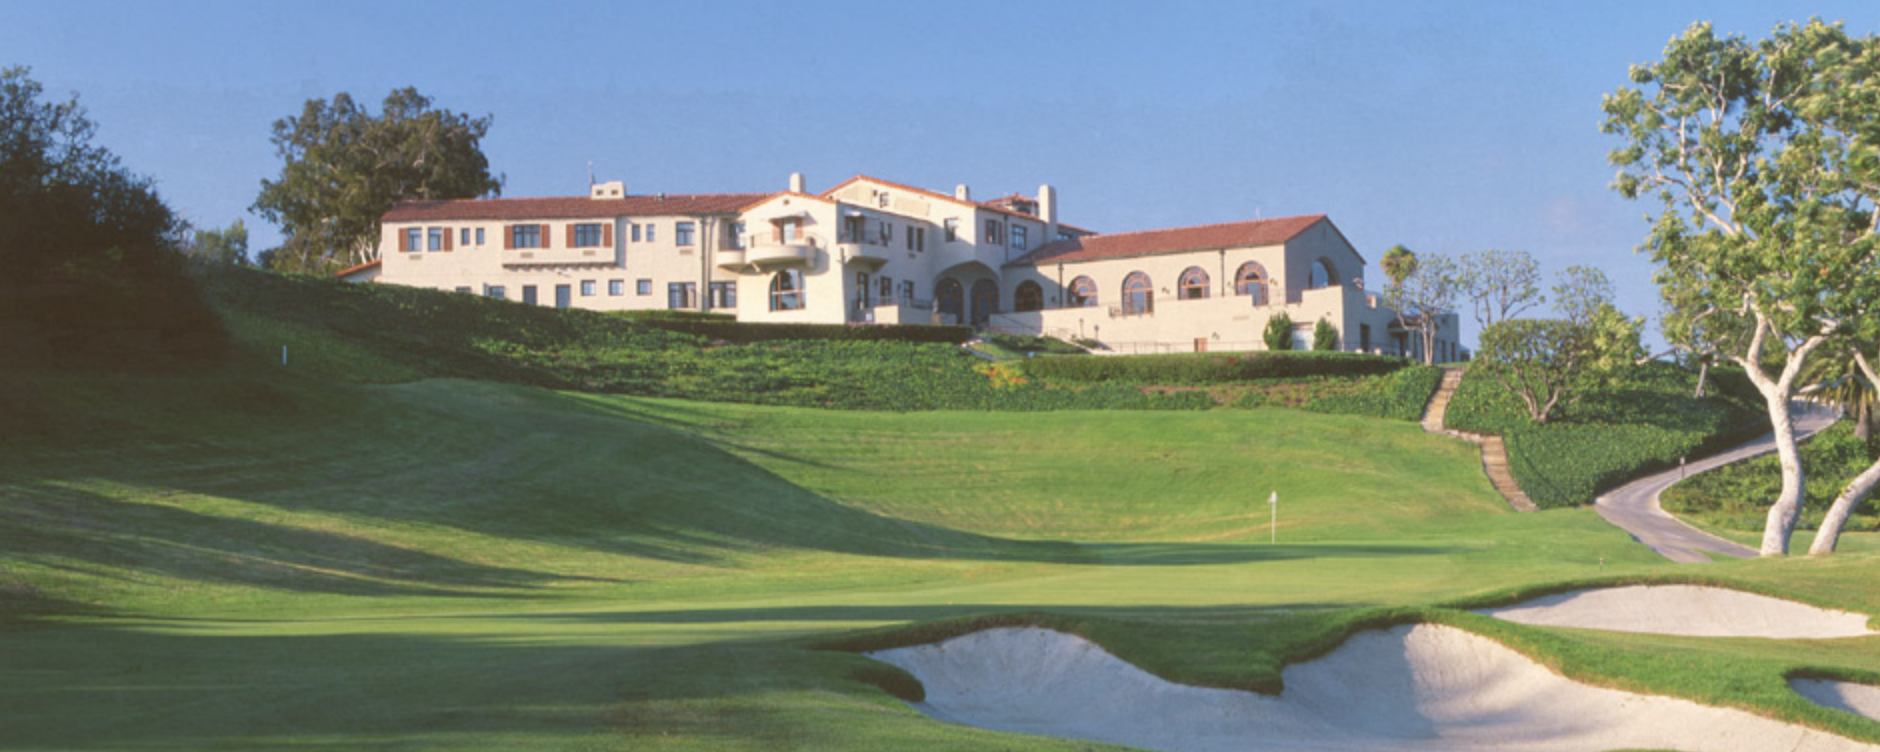 Los Angeles Golf course